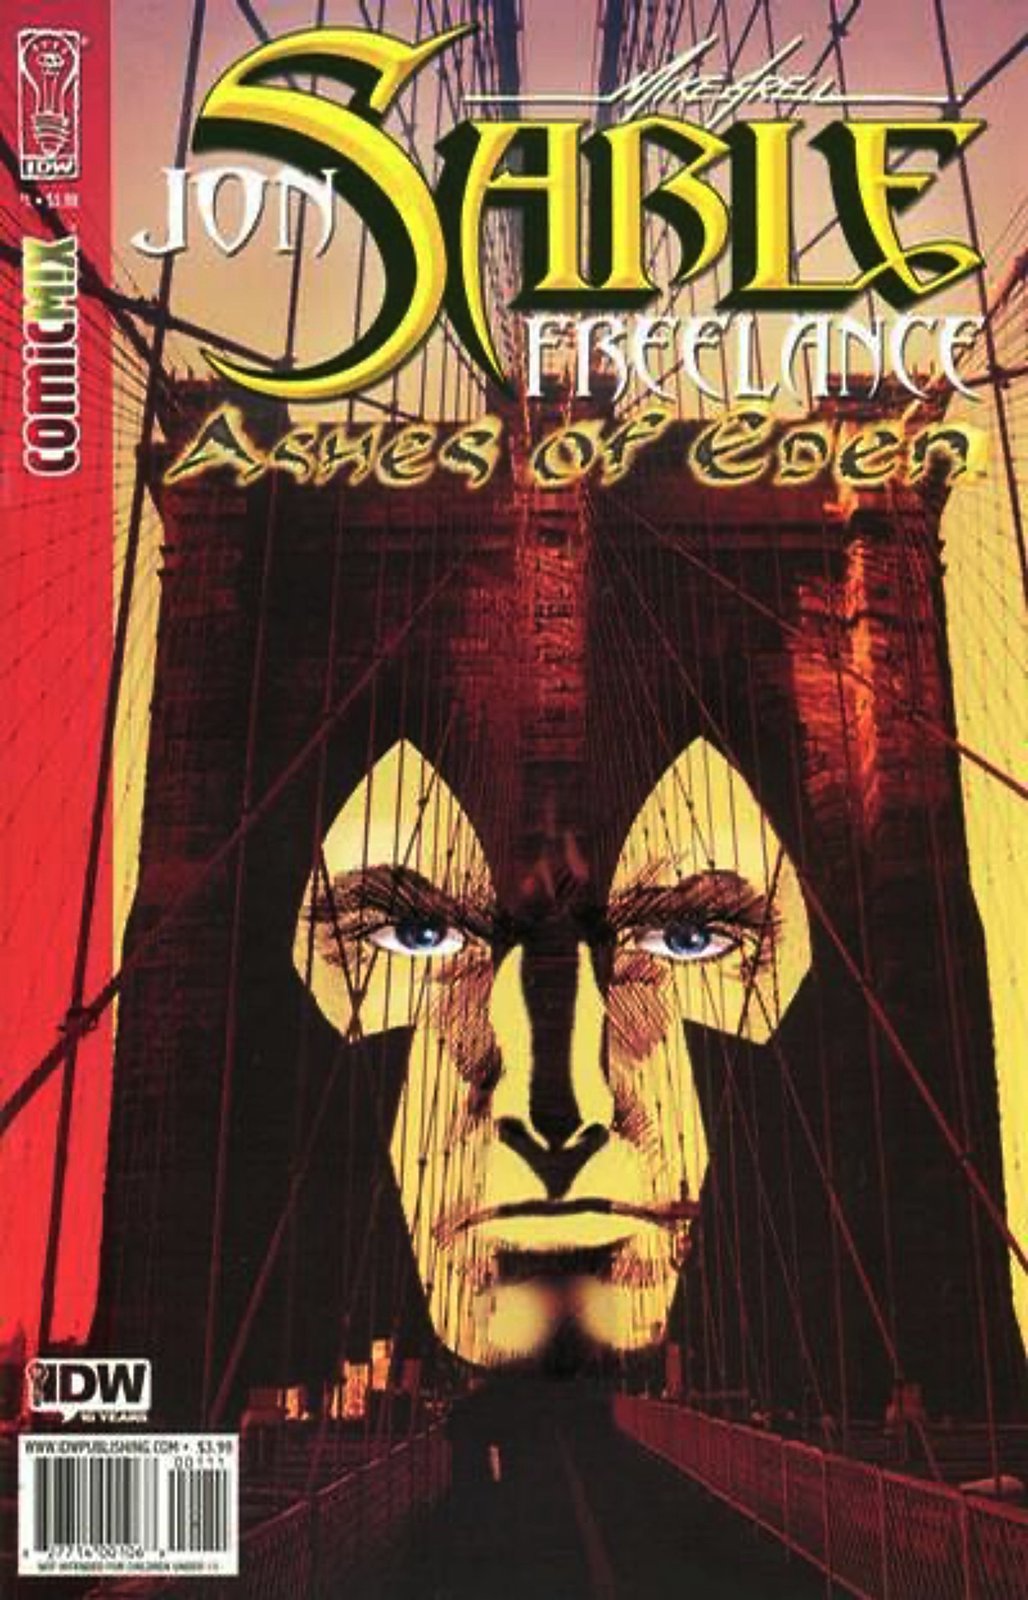 Jon Sable Freelance: Ashes of Eden #1 (2009-2010) IDW Comics